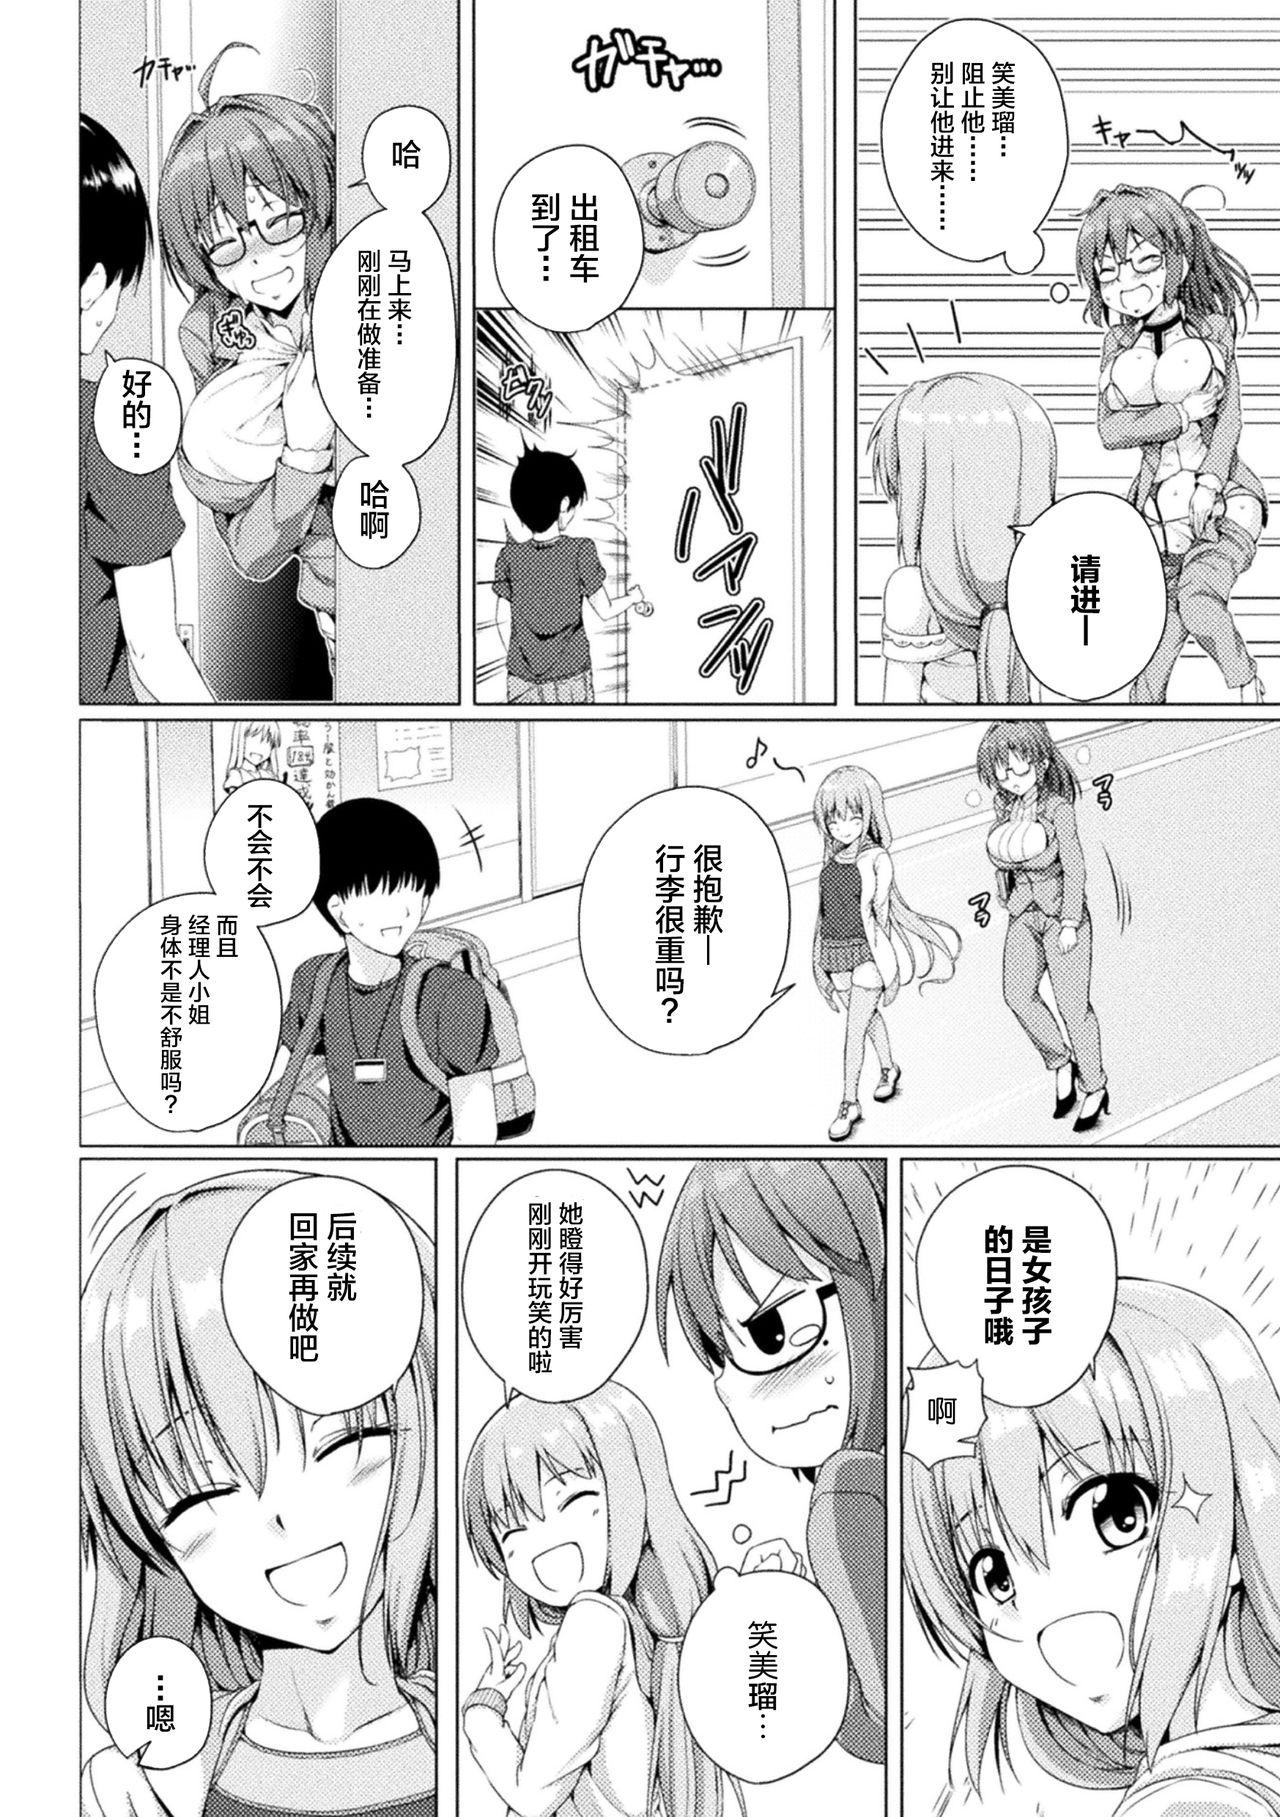 2D Comic Magazine Mesugaki vs Yasashii Onee-san Vol. 1 9